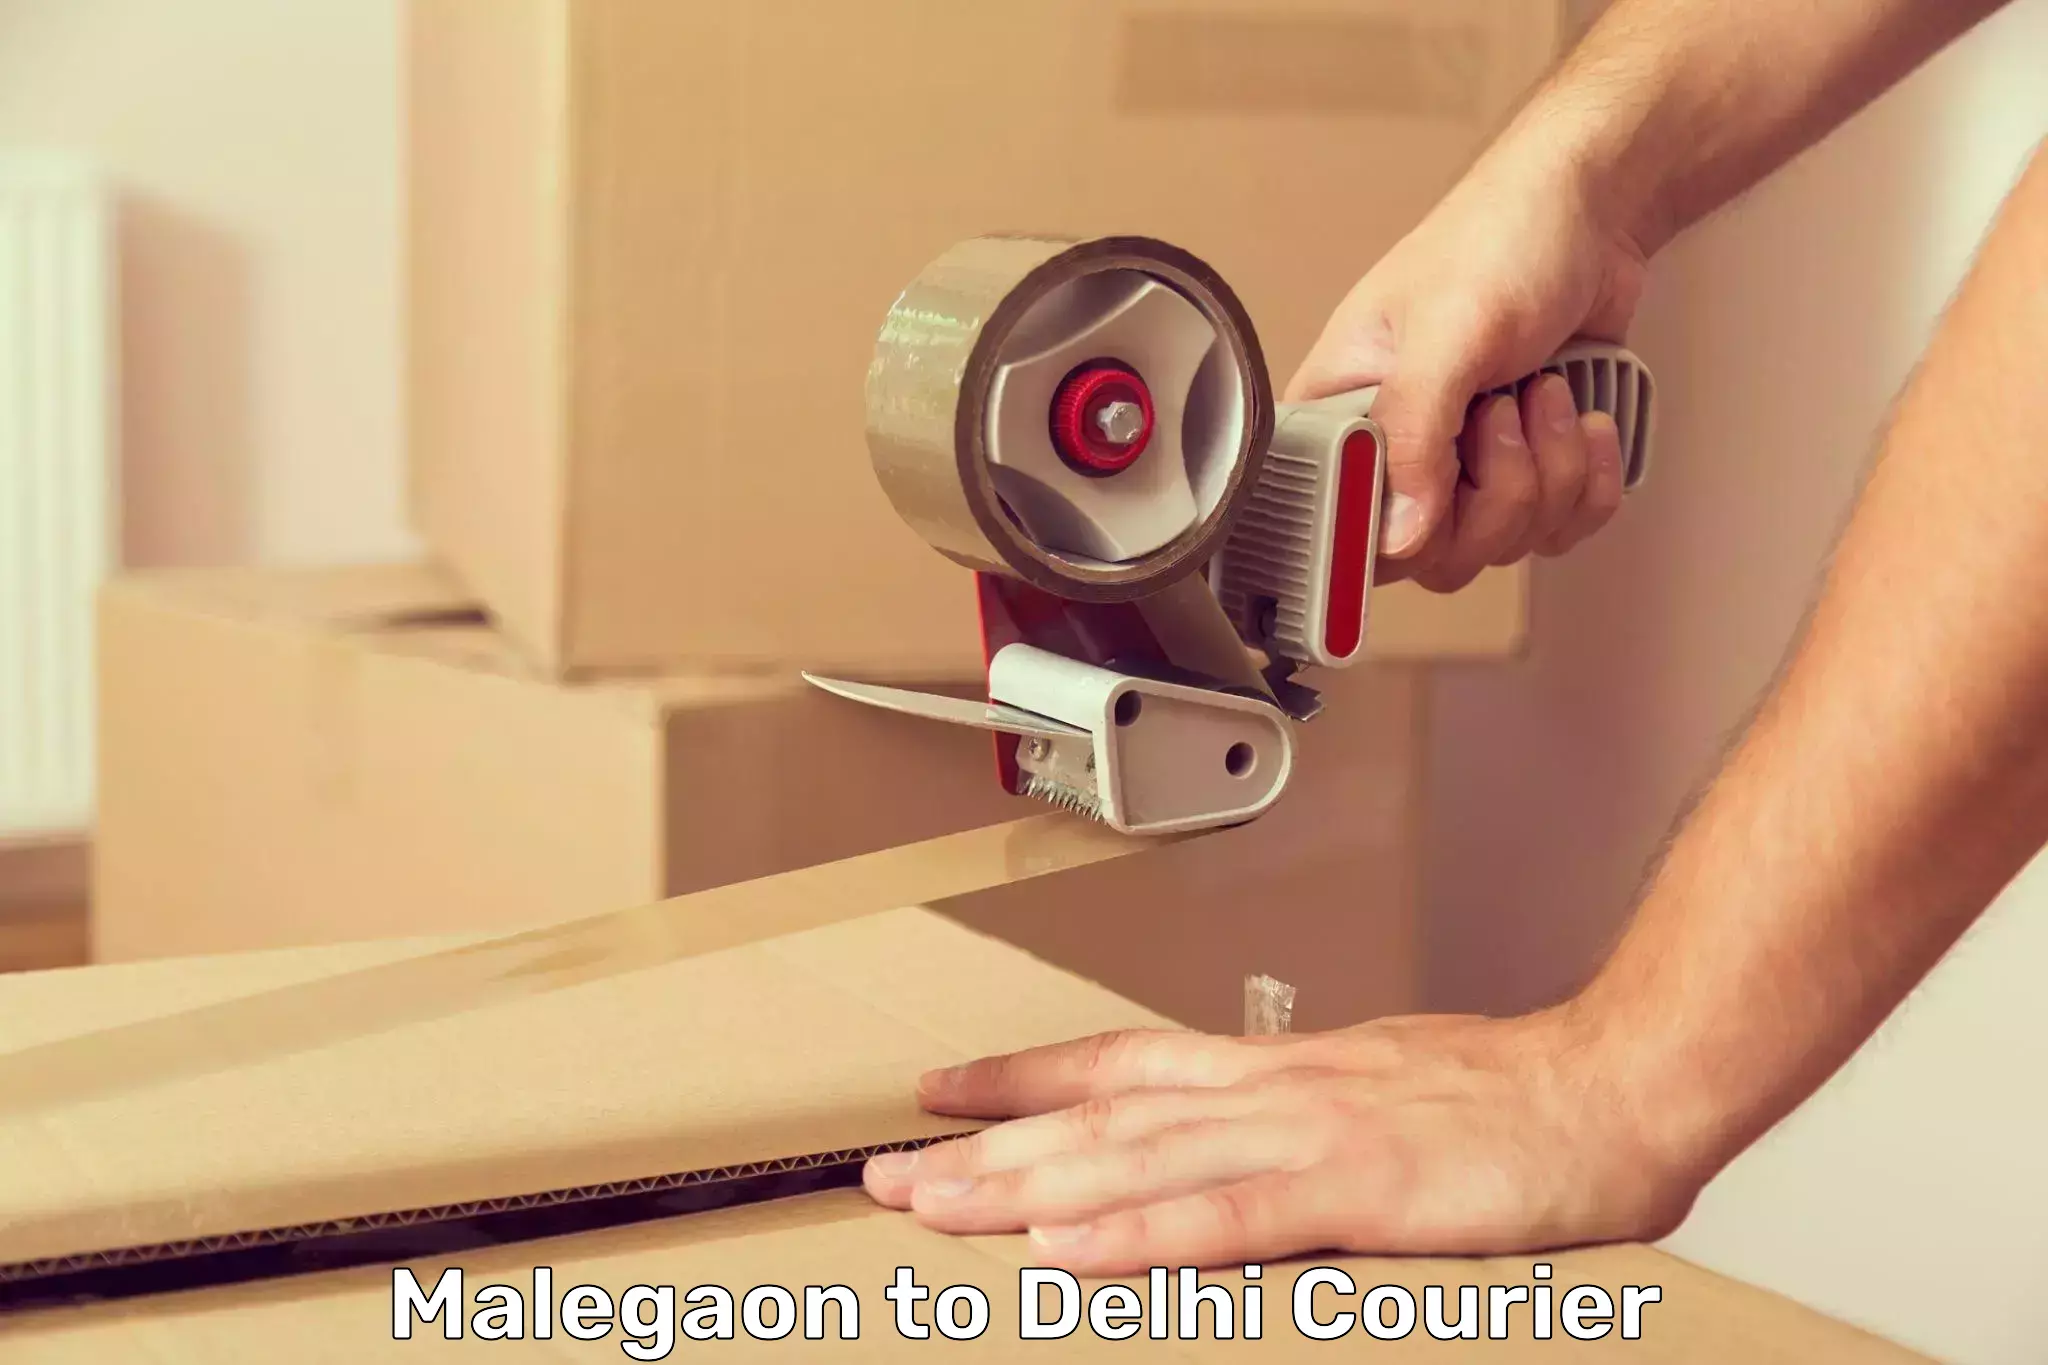 Premium delivery services Malegaon to Delhi